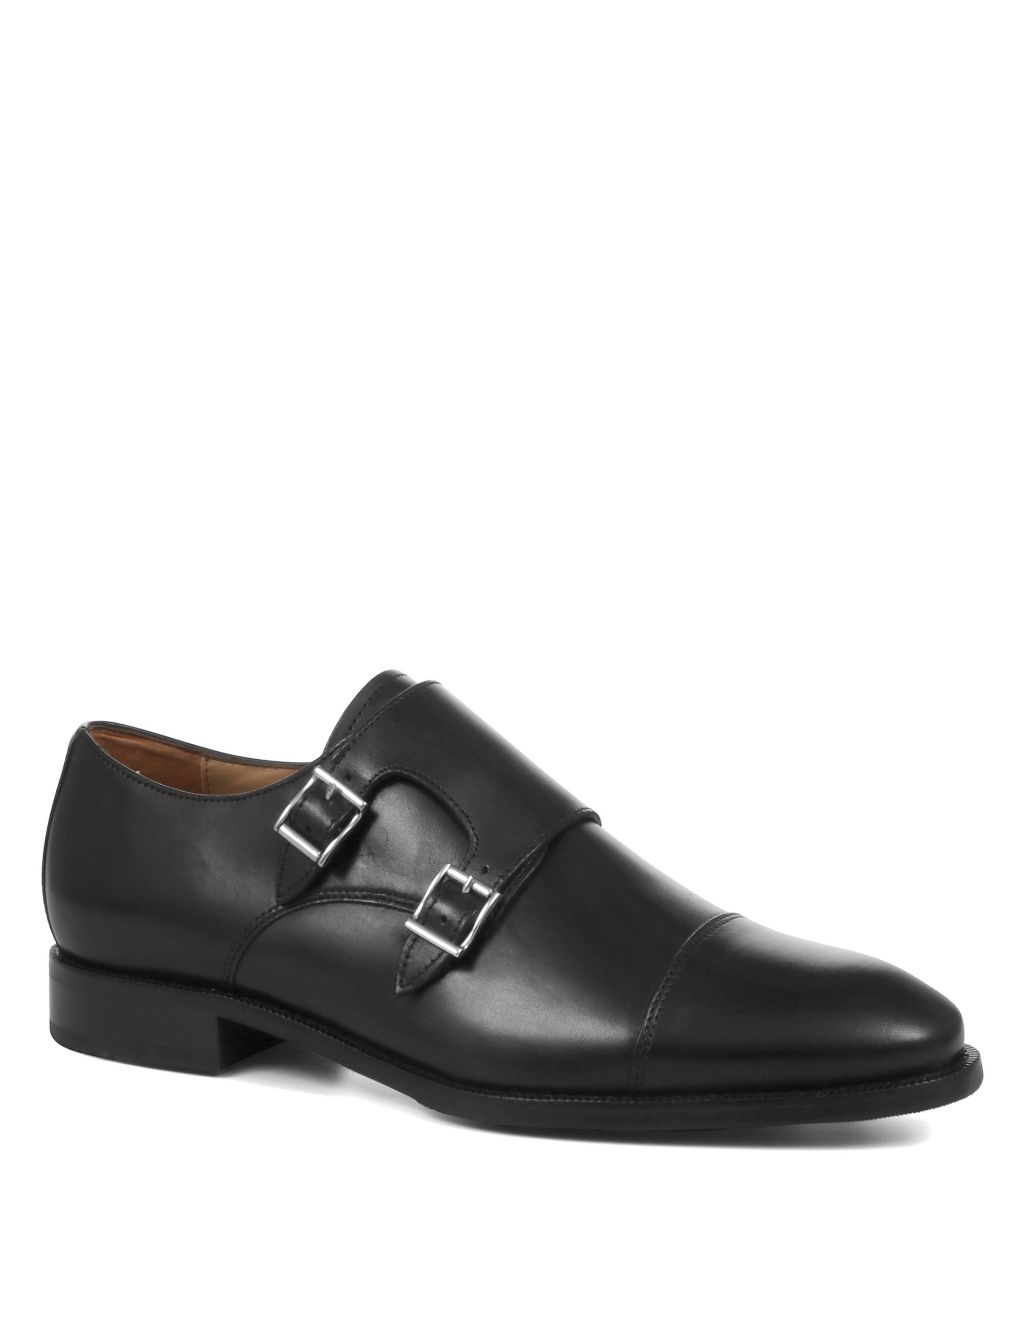 Leather Double Monk Strap Shoes | Jones Bootmaker | M&S